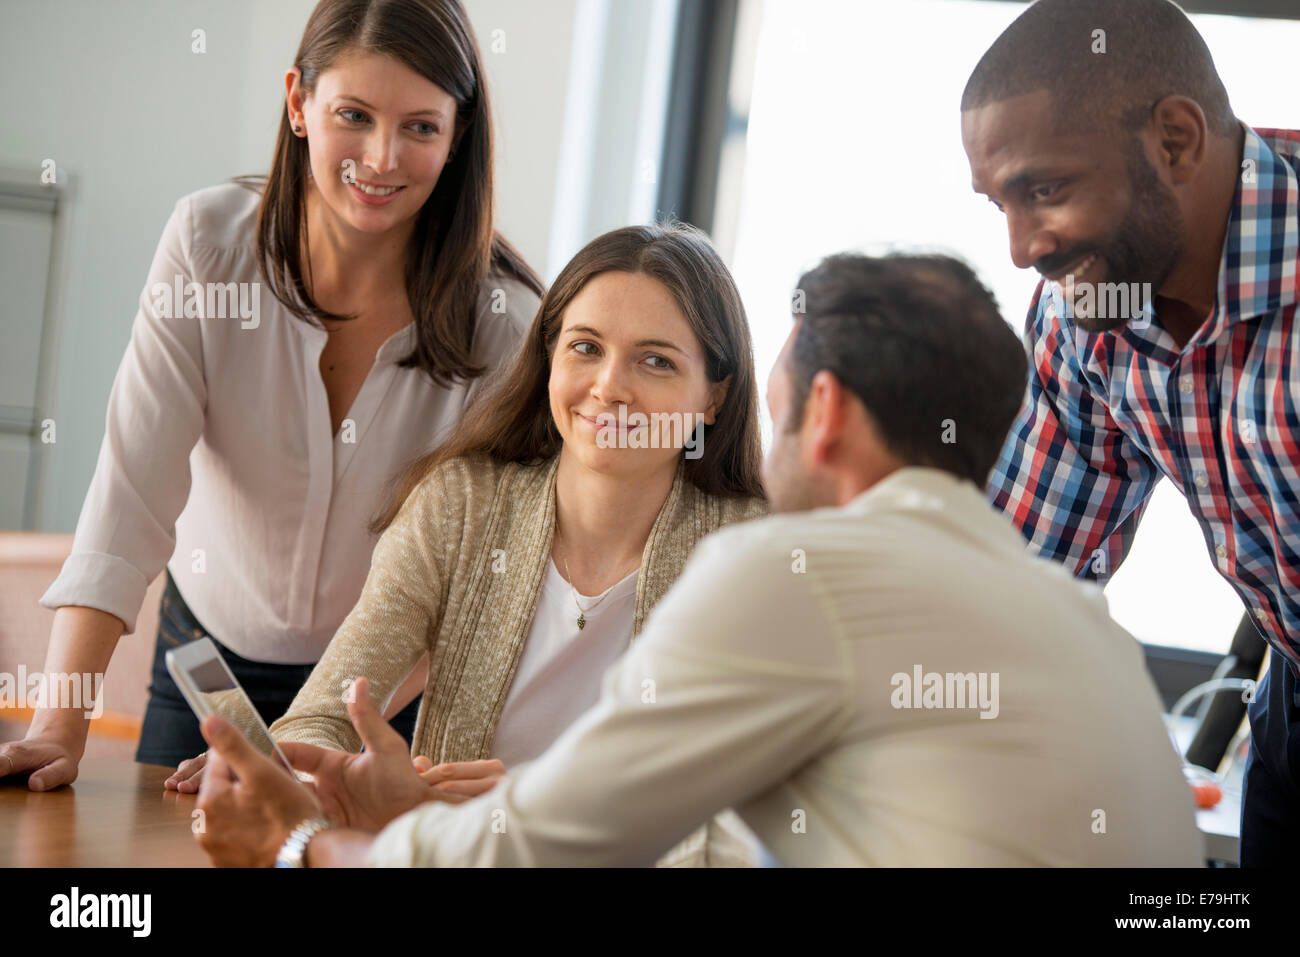 Quatre personnes, hommes et femmes, regroupés autour d'une tablette numérique, regarder l'écran. Banque D'Images